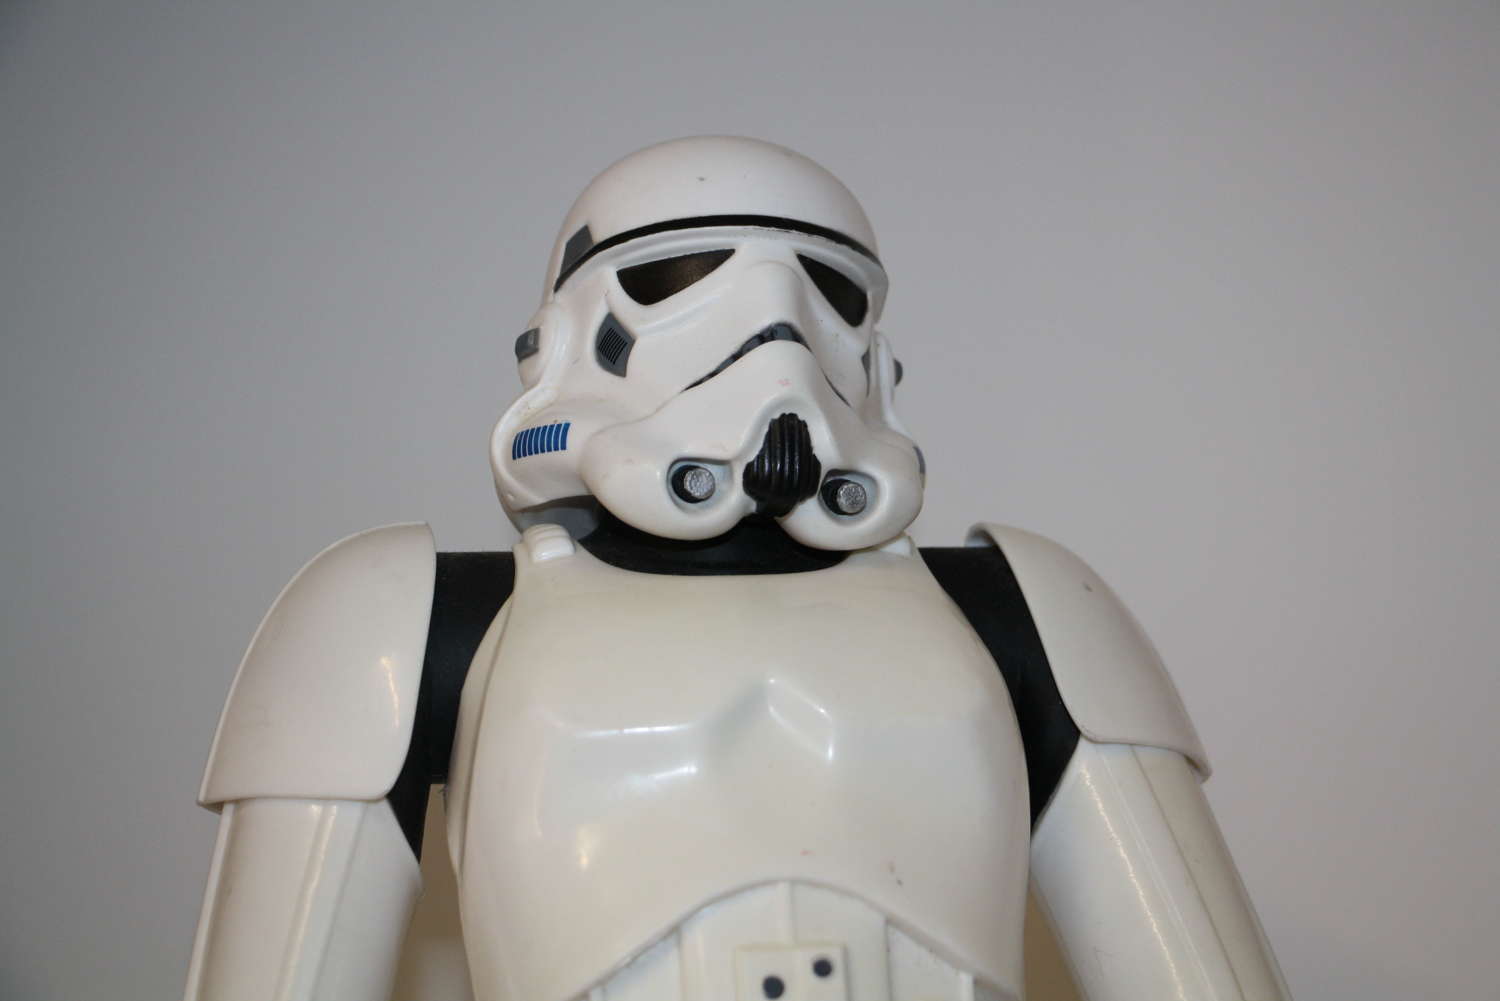 A star wars storm trooper figure model by Jakks 18